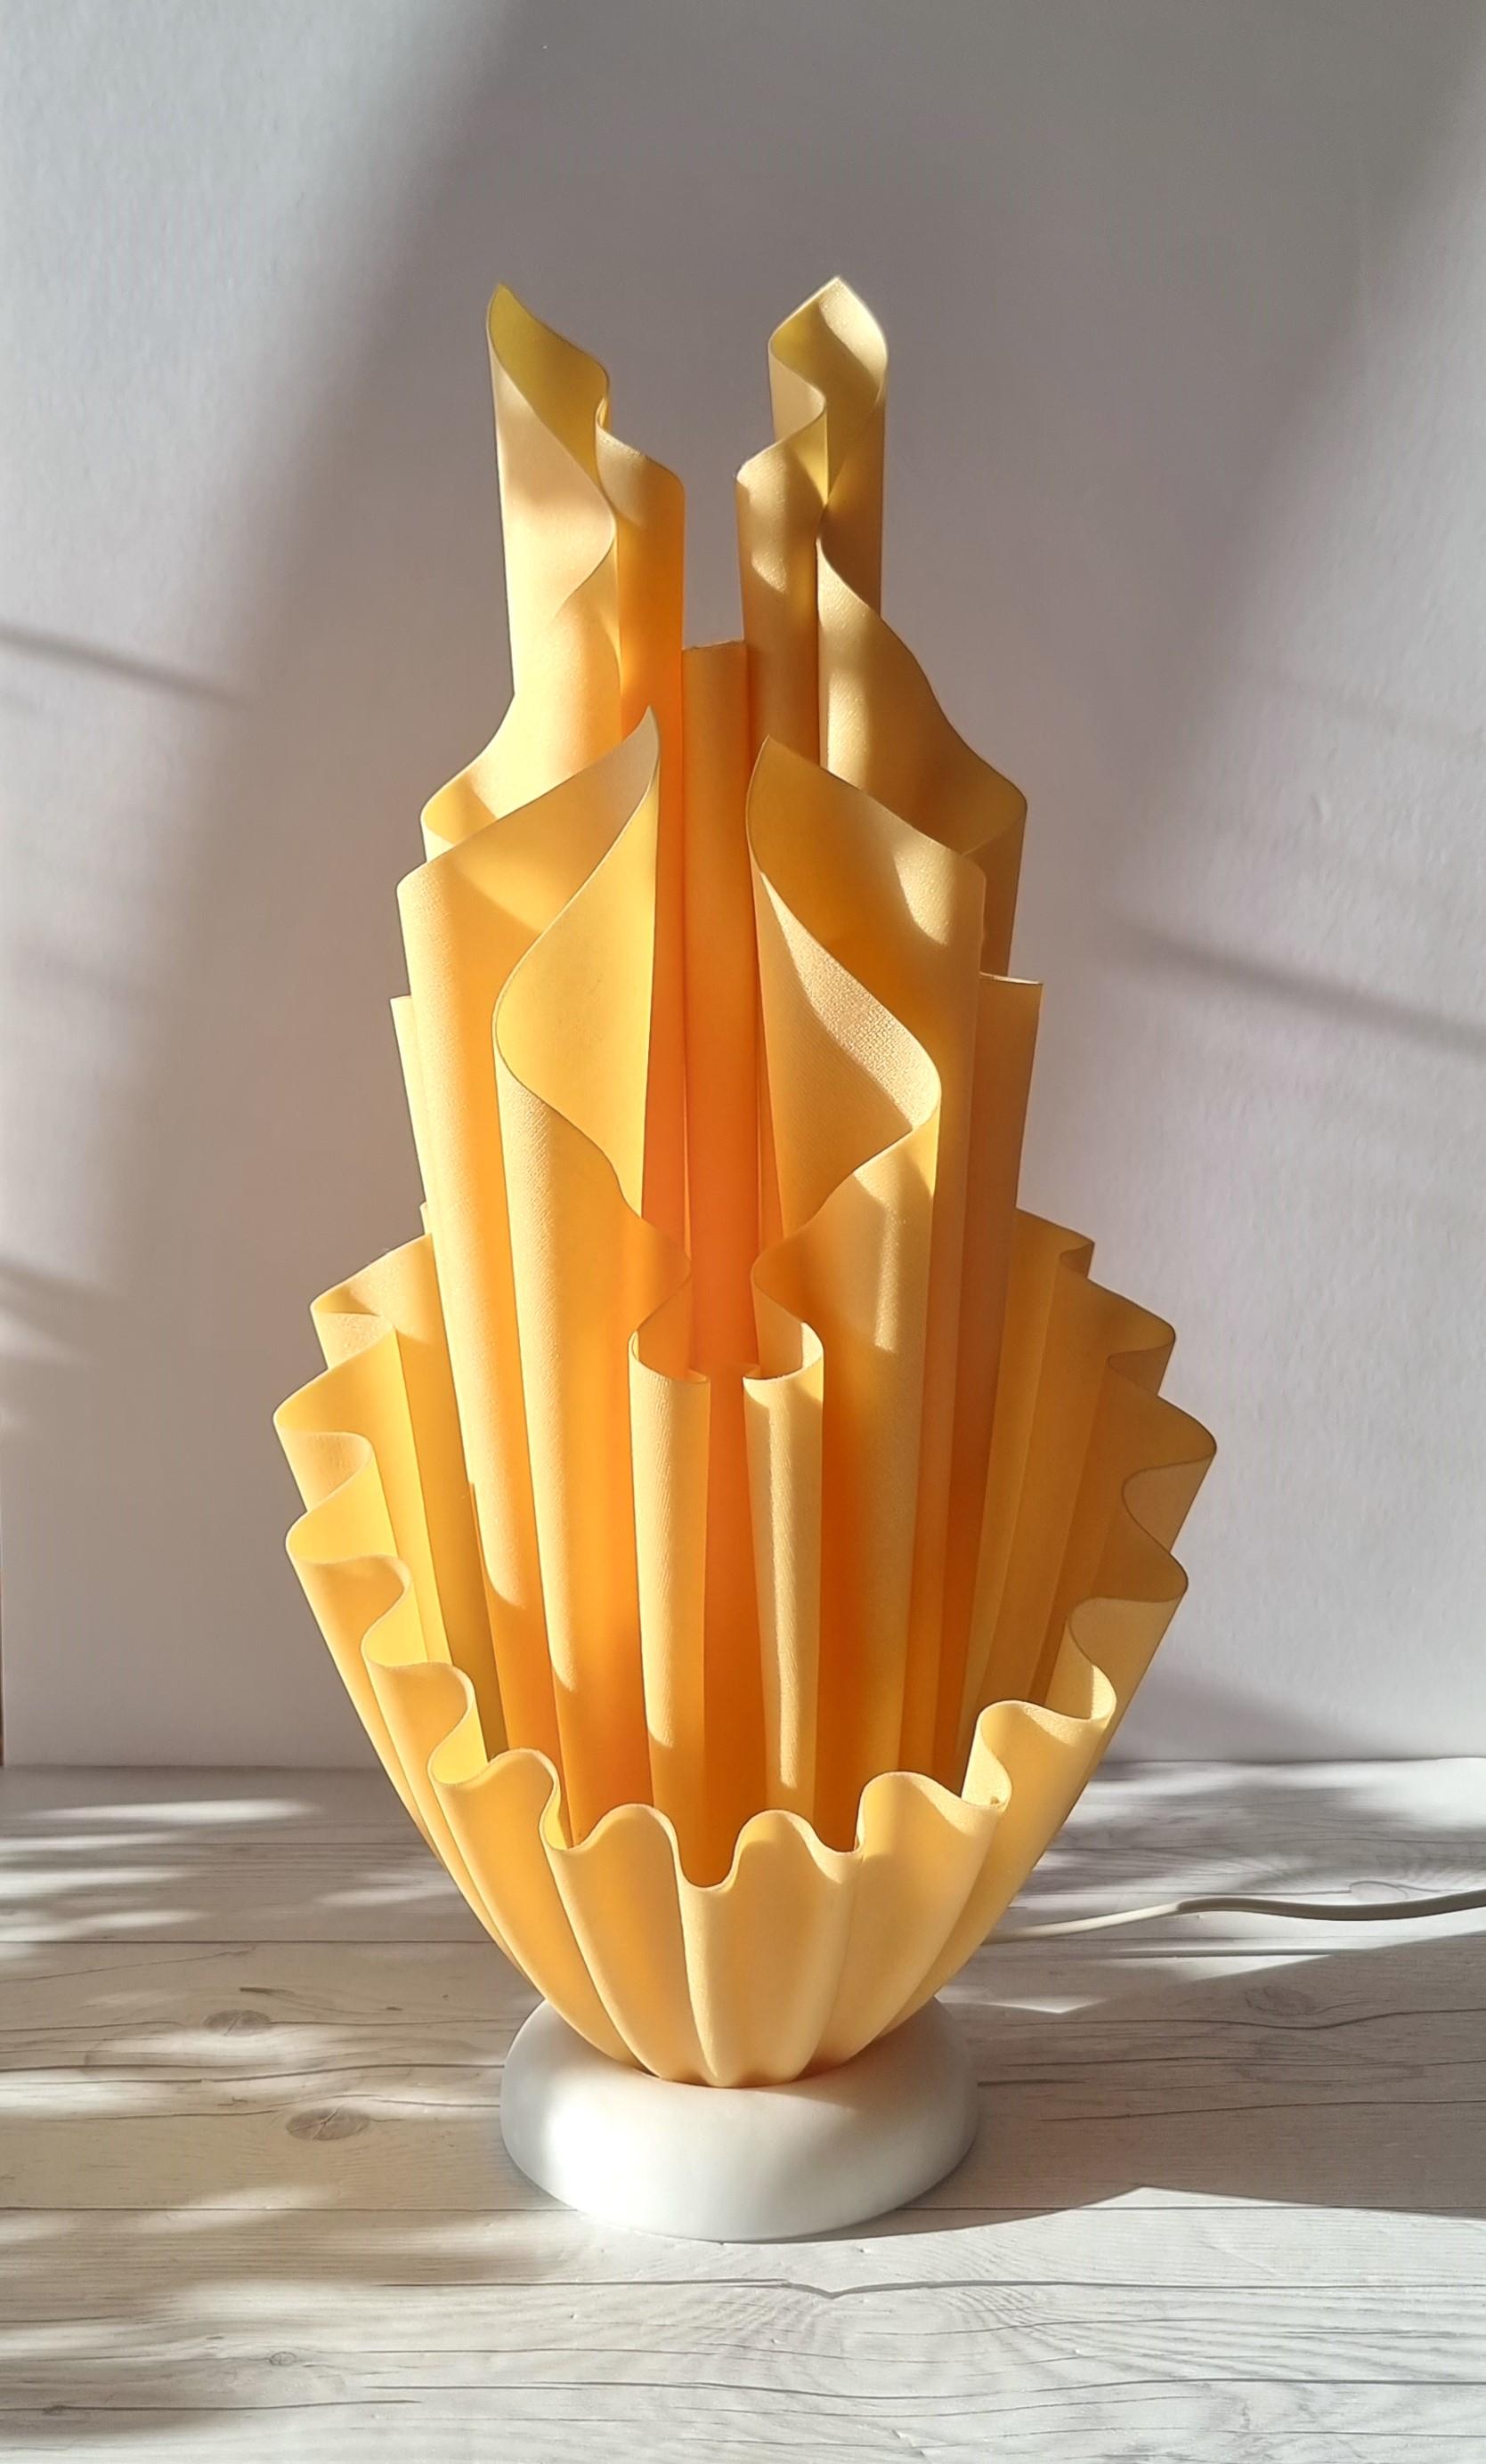 Diese majestätisch-skulpturale Lampe ist ein französisches Design der Firma Georgia Jacob (1988 - 2012). Dieses besondere Stück stammt aus der Corolle-Serie, einer von vielen Serien, in denen Jacob Form und Gestalt ausschließlich durch die Anordnung